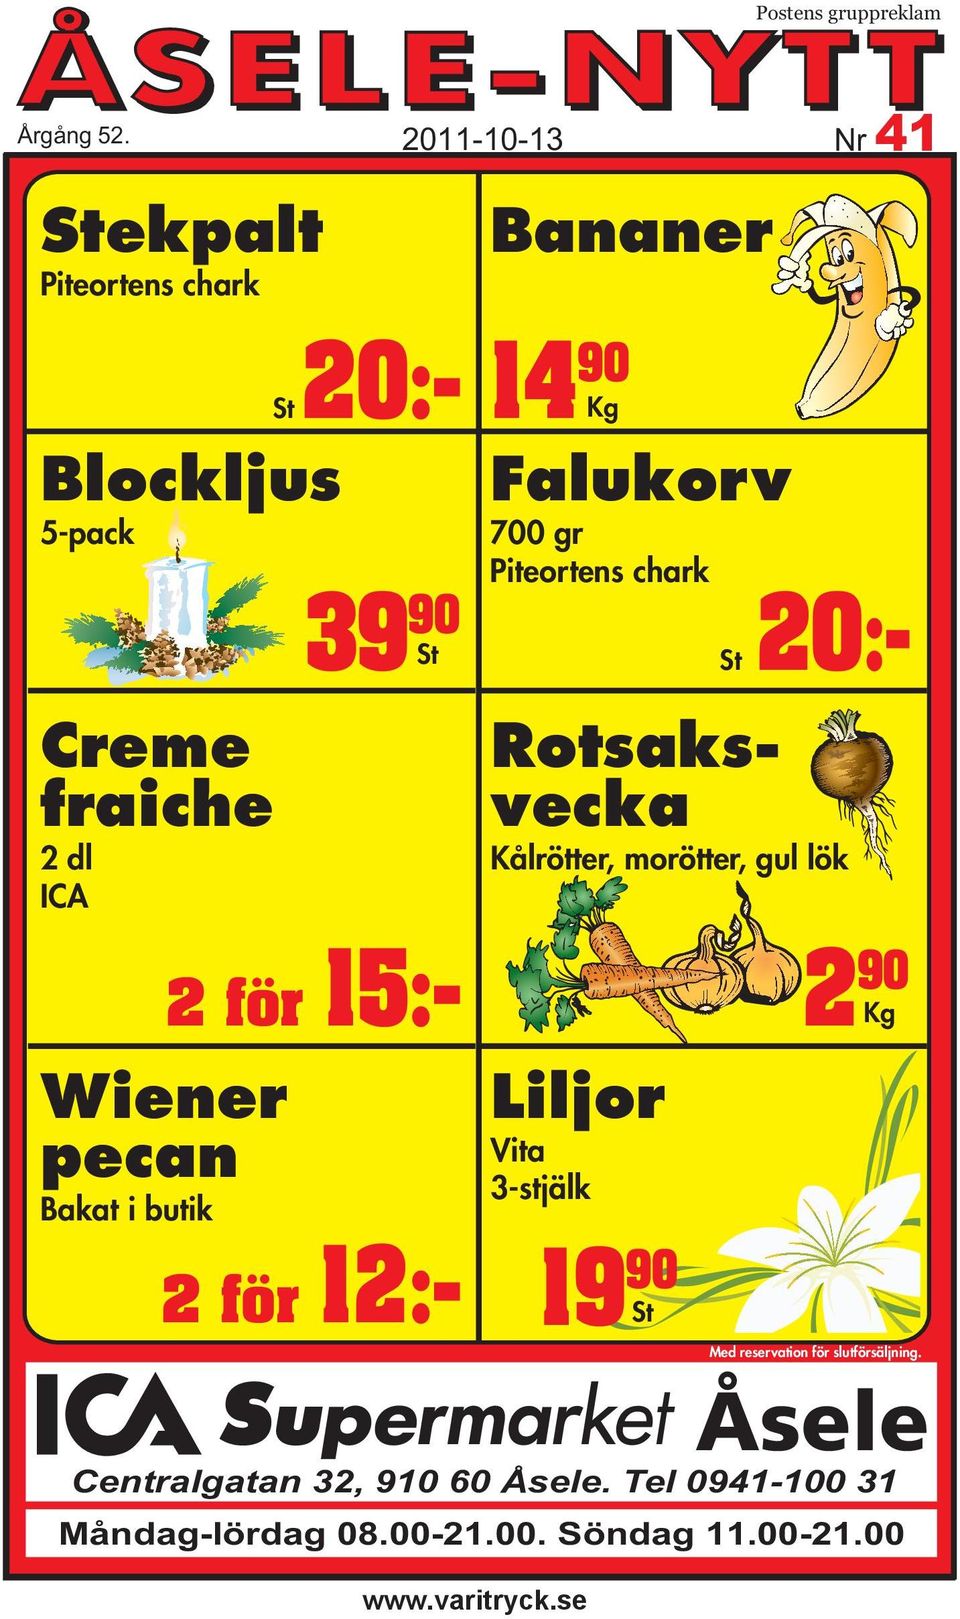 Wiener pecan Bakat i butik 2 för 12:- Bananer 14 90 Kg Falukorv 700 gr Piteortens chark St 20:- Rotsaksvecka